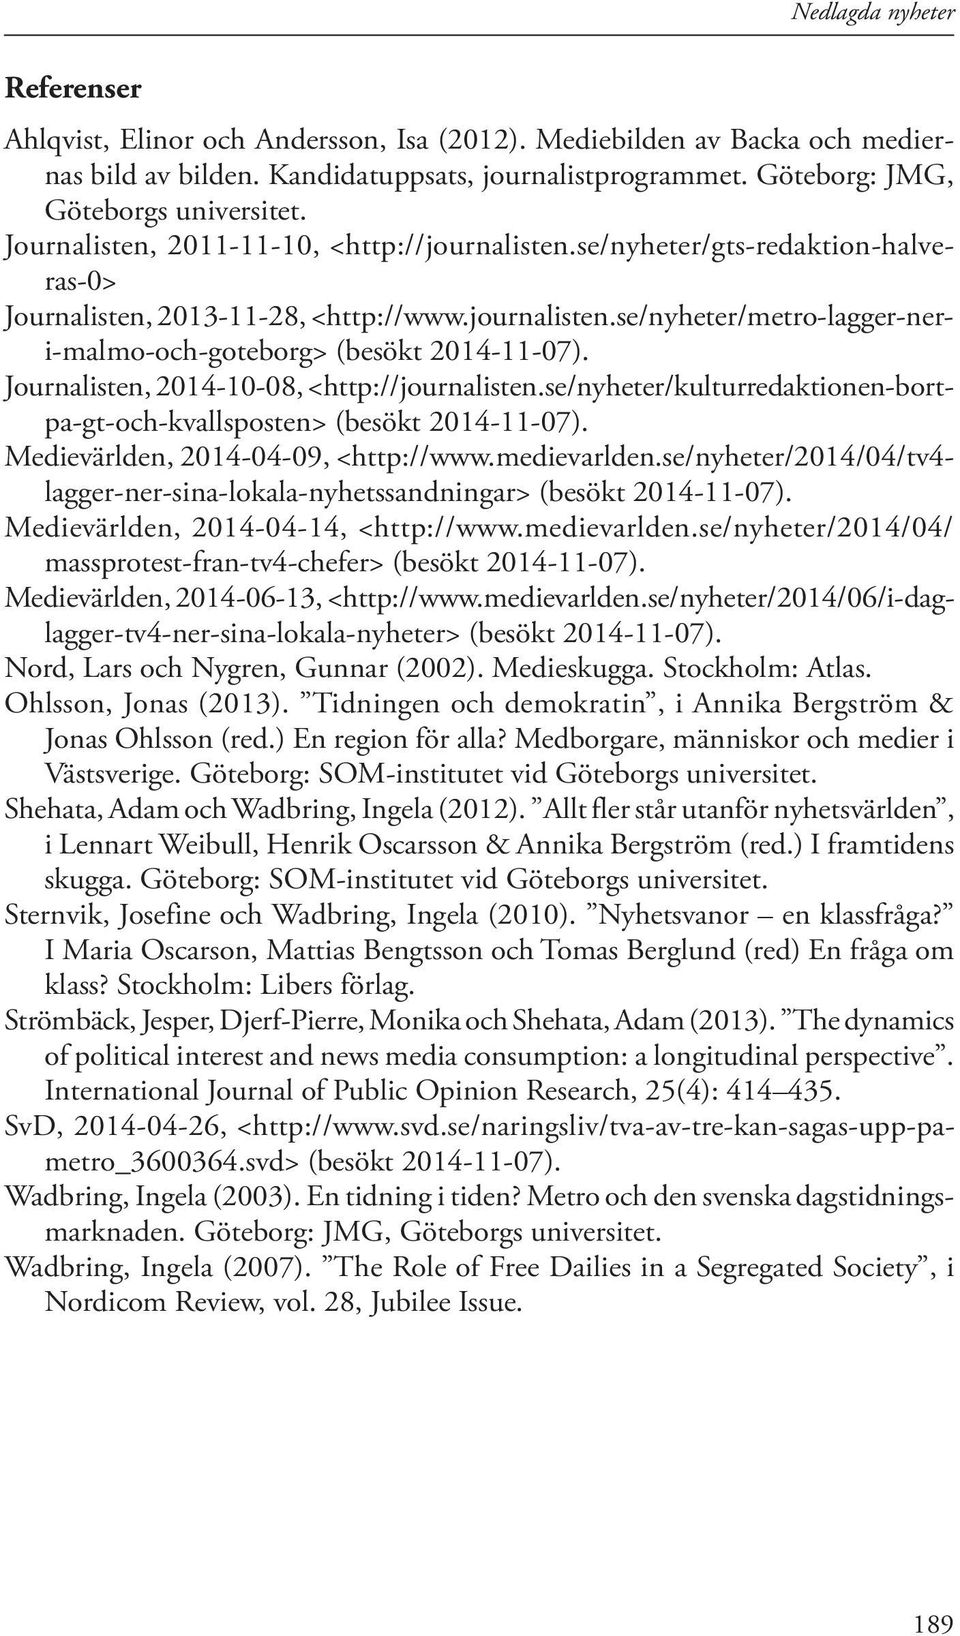 Journalisten, 2014-10-08, <http://journalisten.se/nyheter/kulturredaktionen-bortpa-gt-och-kvallsposten> (besökt 2014-11-07). Medievärlden, 2014-04-09, <http://www.medievarlden.